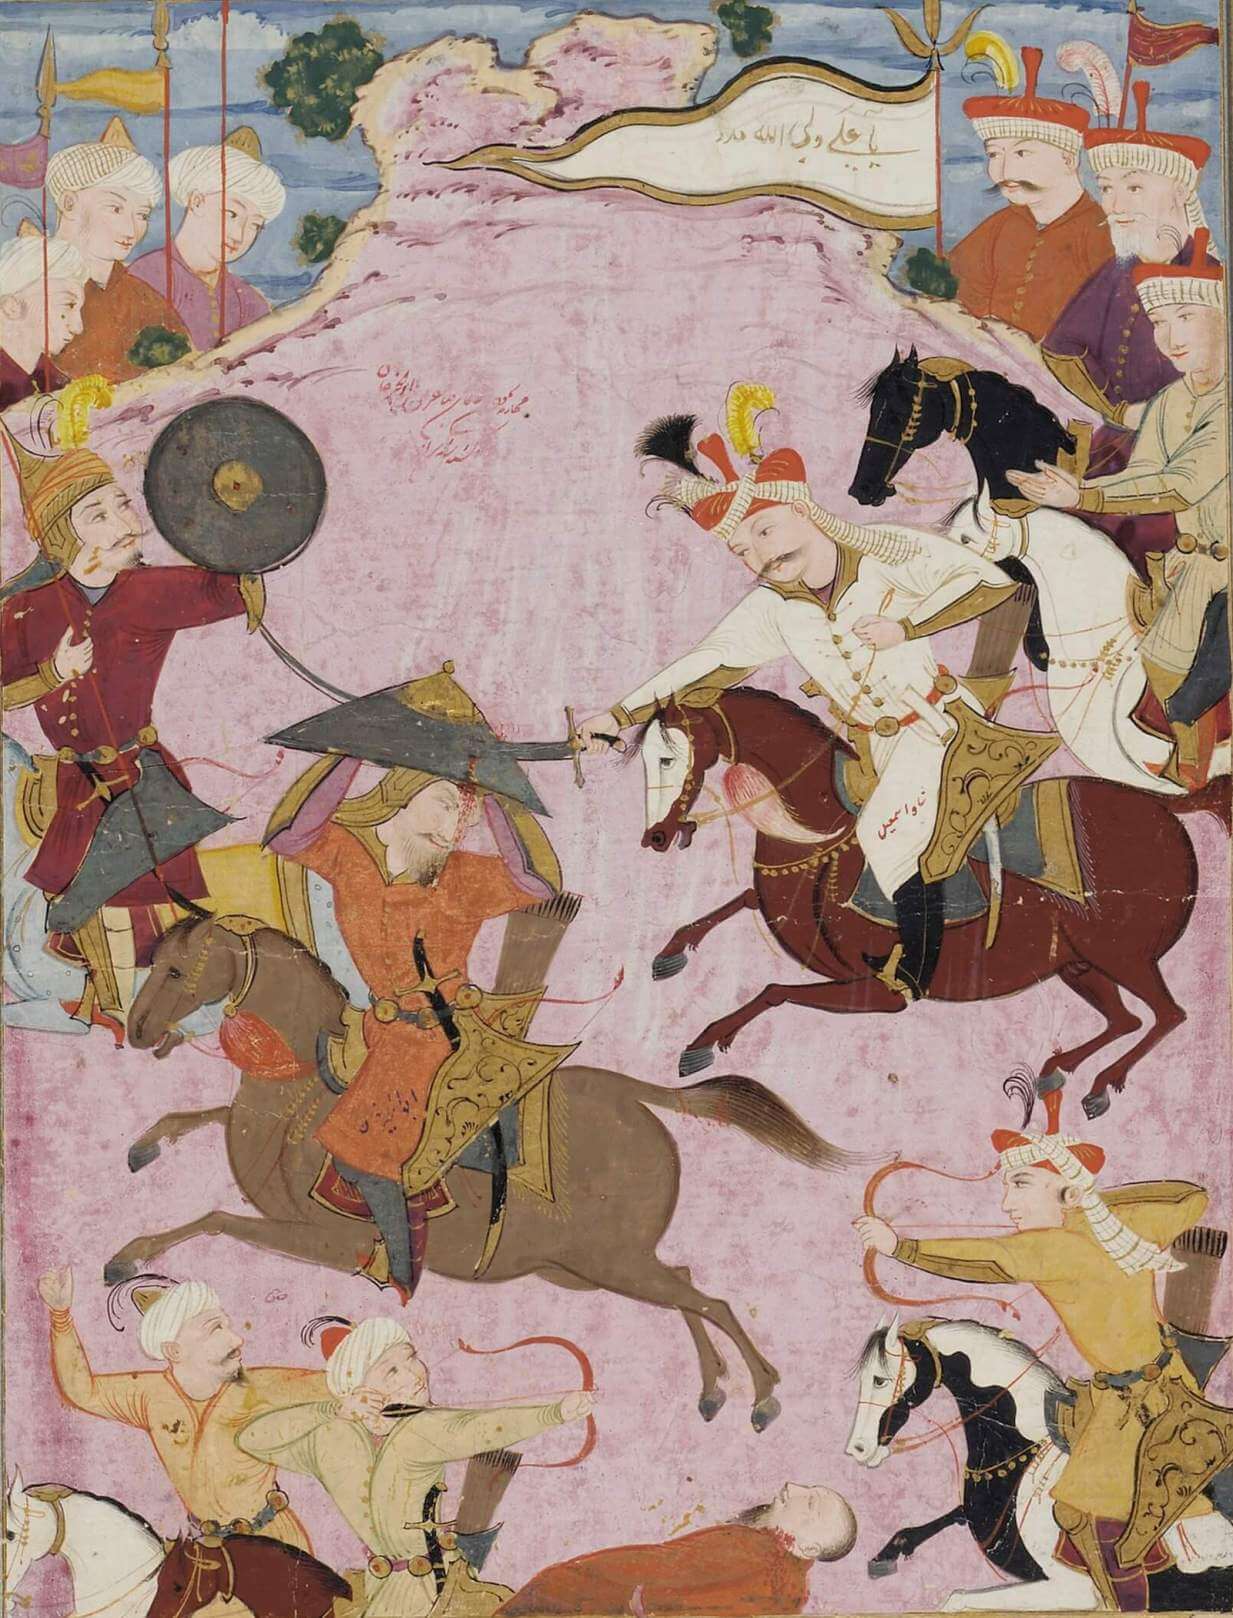 Şah İsmail ile Şeybani Hanlığı kurucusu Börçigin Ebu'l Khayr Han arasındaki savaşta Kızılbaşlar